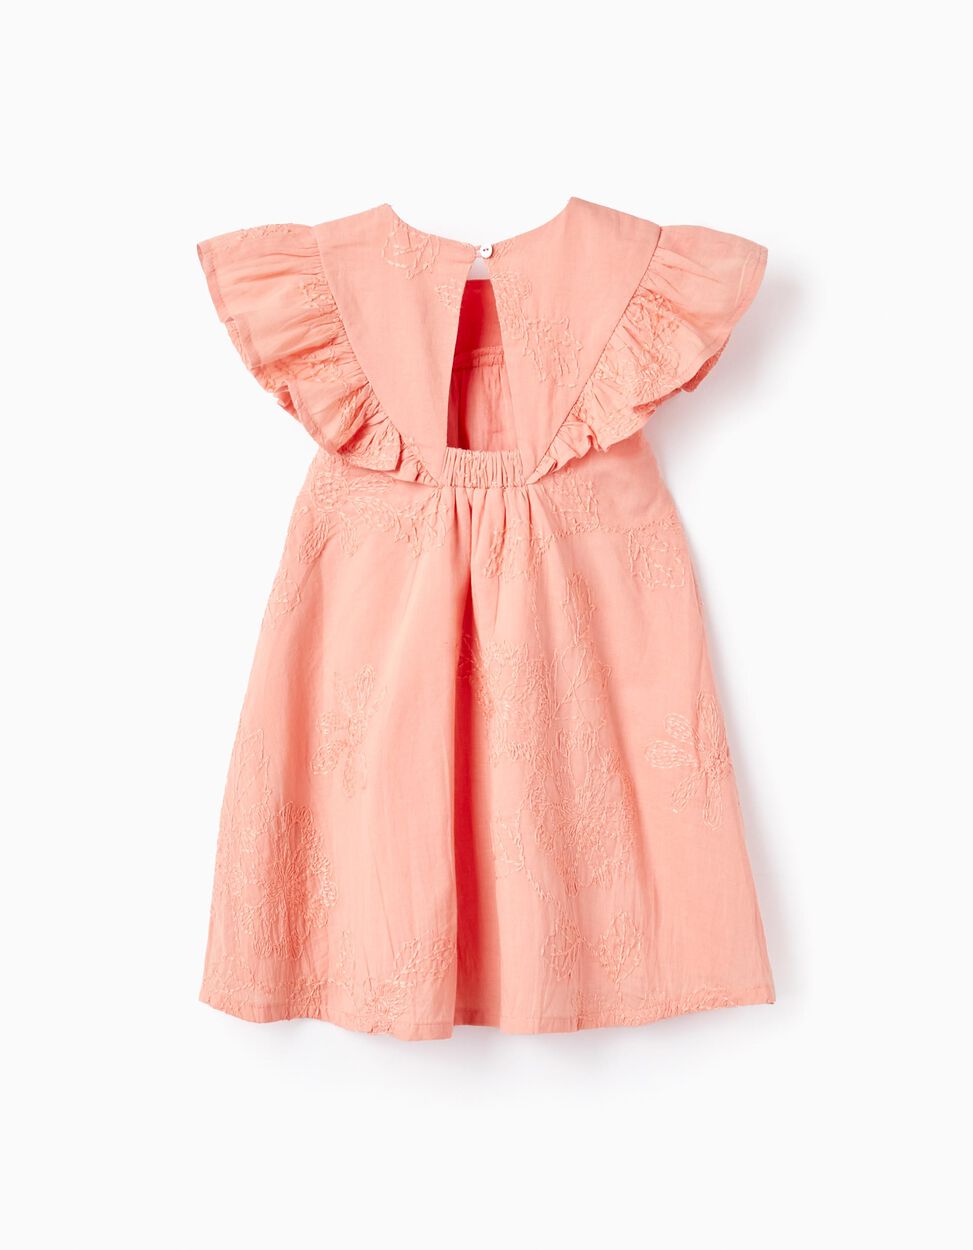 Comprar Online Vestido de Algodón con Bordados y Volantes para Bebé Niña, Coral